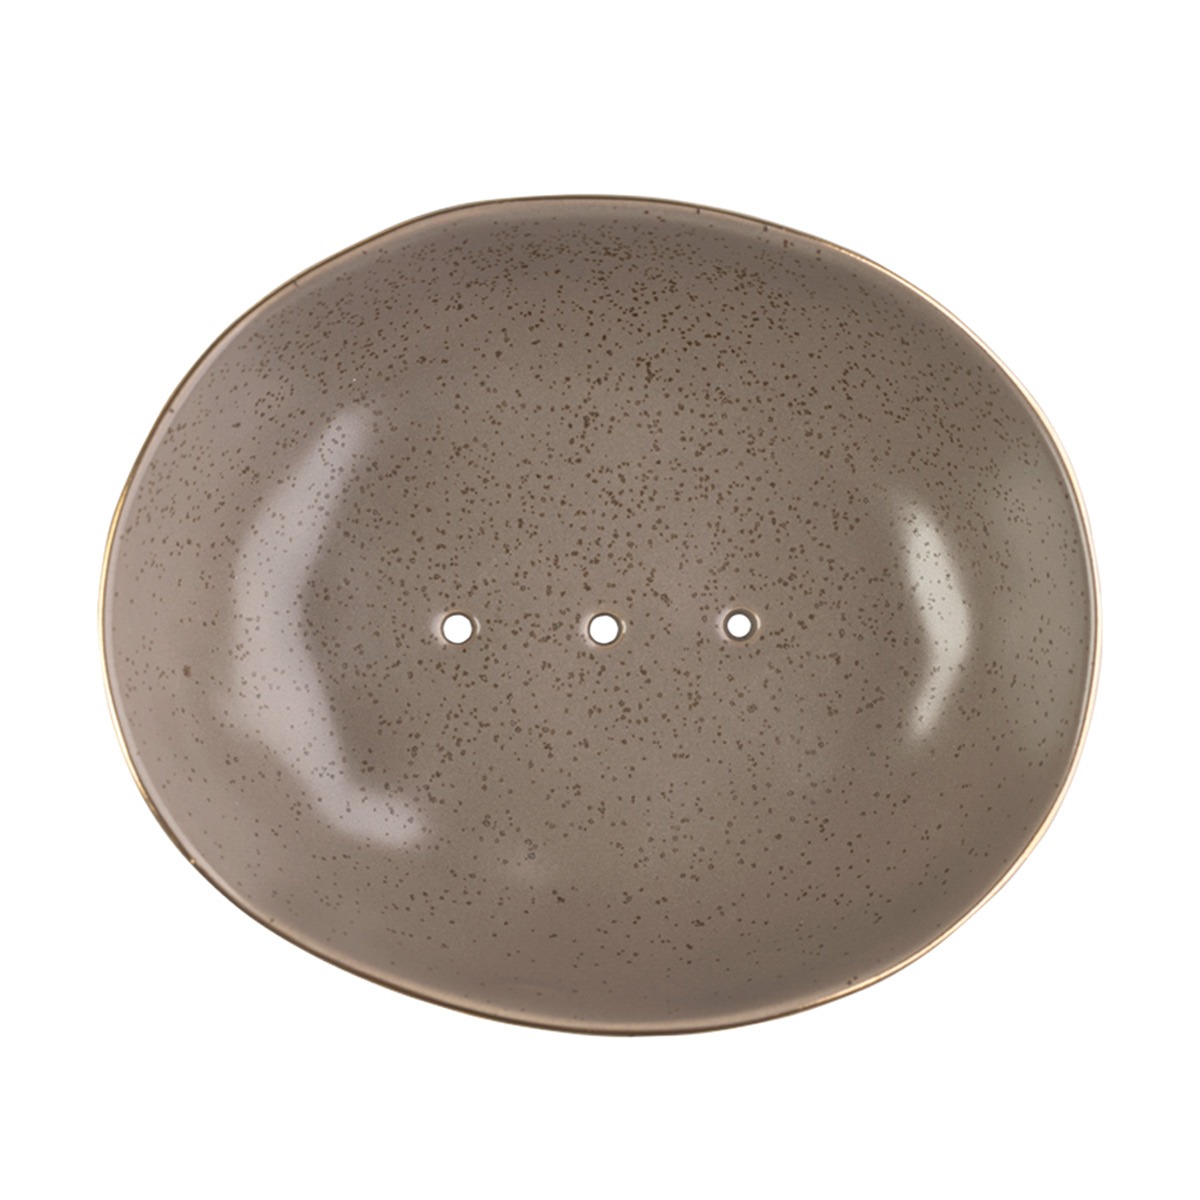 ovale Seifenschale Classic aus Keramik in braun mit zart goldenem Rand von Tranquillo